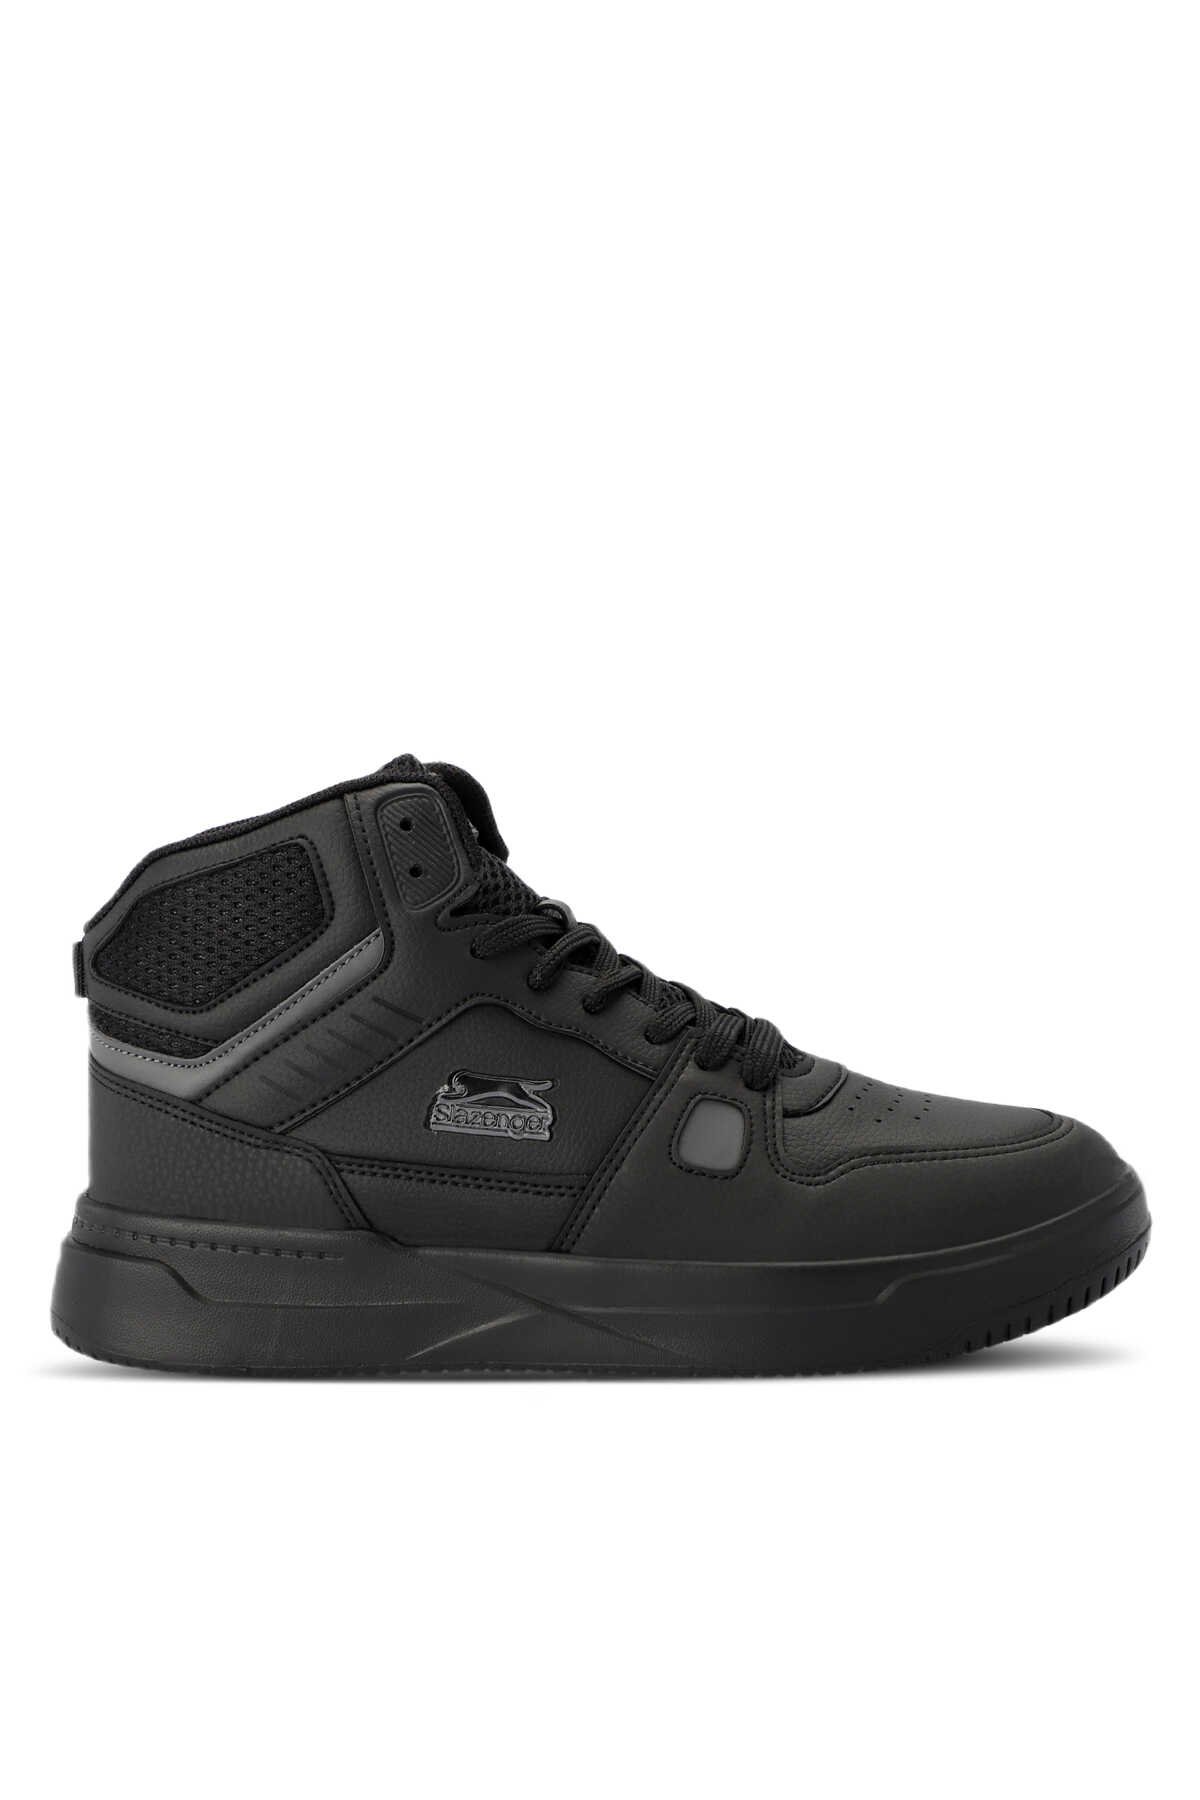 Slazenger - Slazenger PAN Sneaker Erkek Ayakkabı Siyah / Siyah